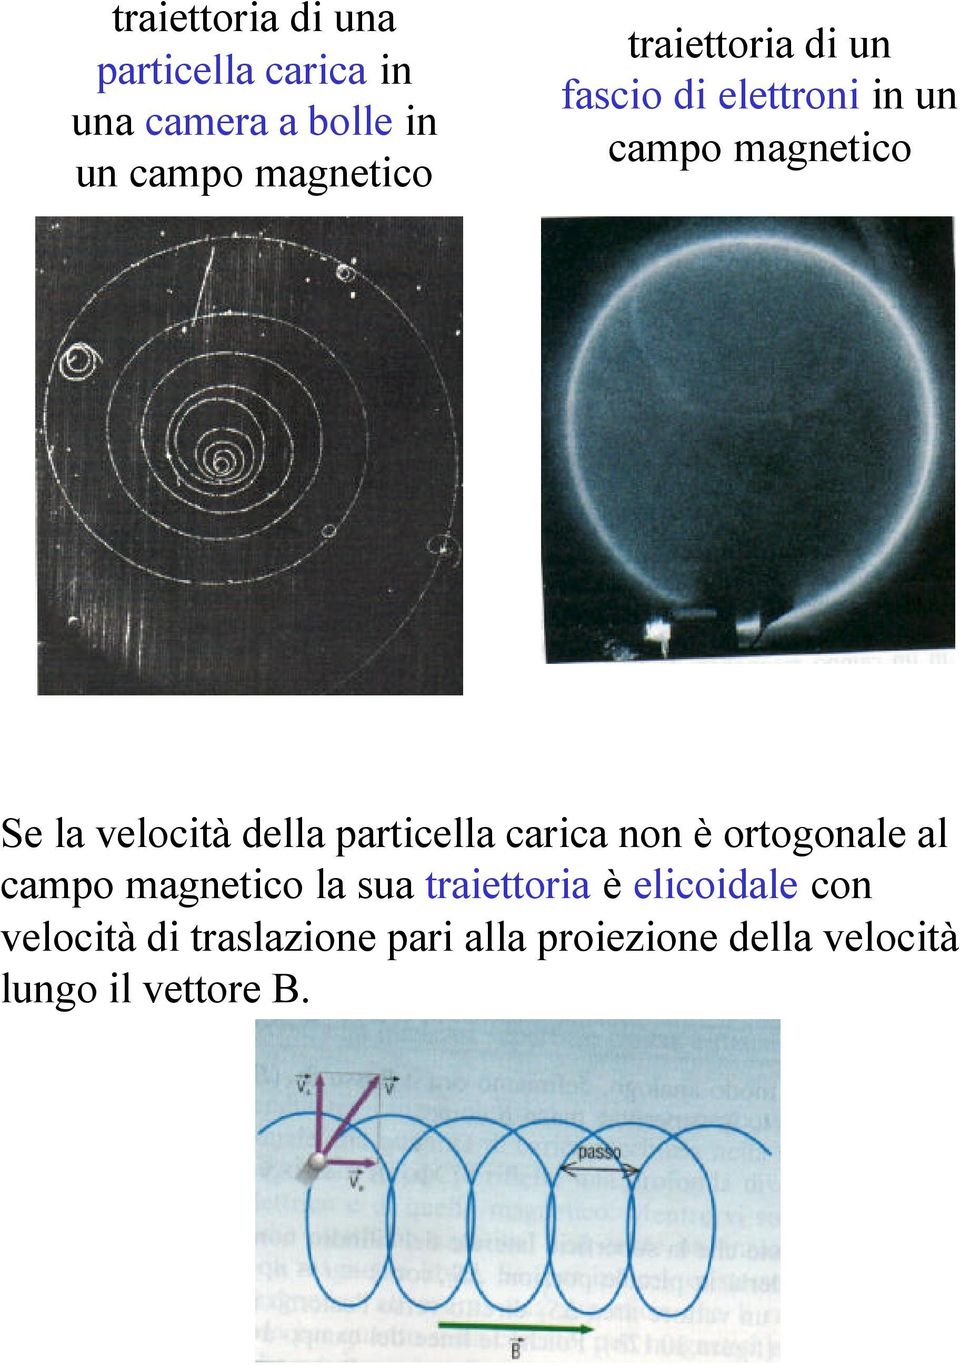 particella carica non è ortogonale al campo magnetico la sua traiettoria è